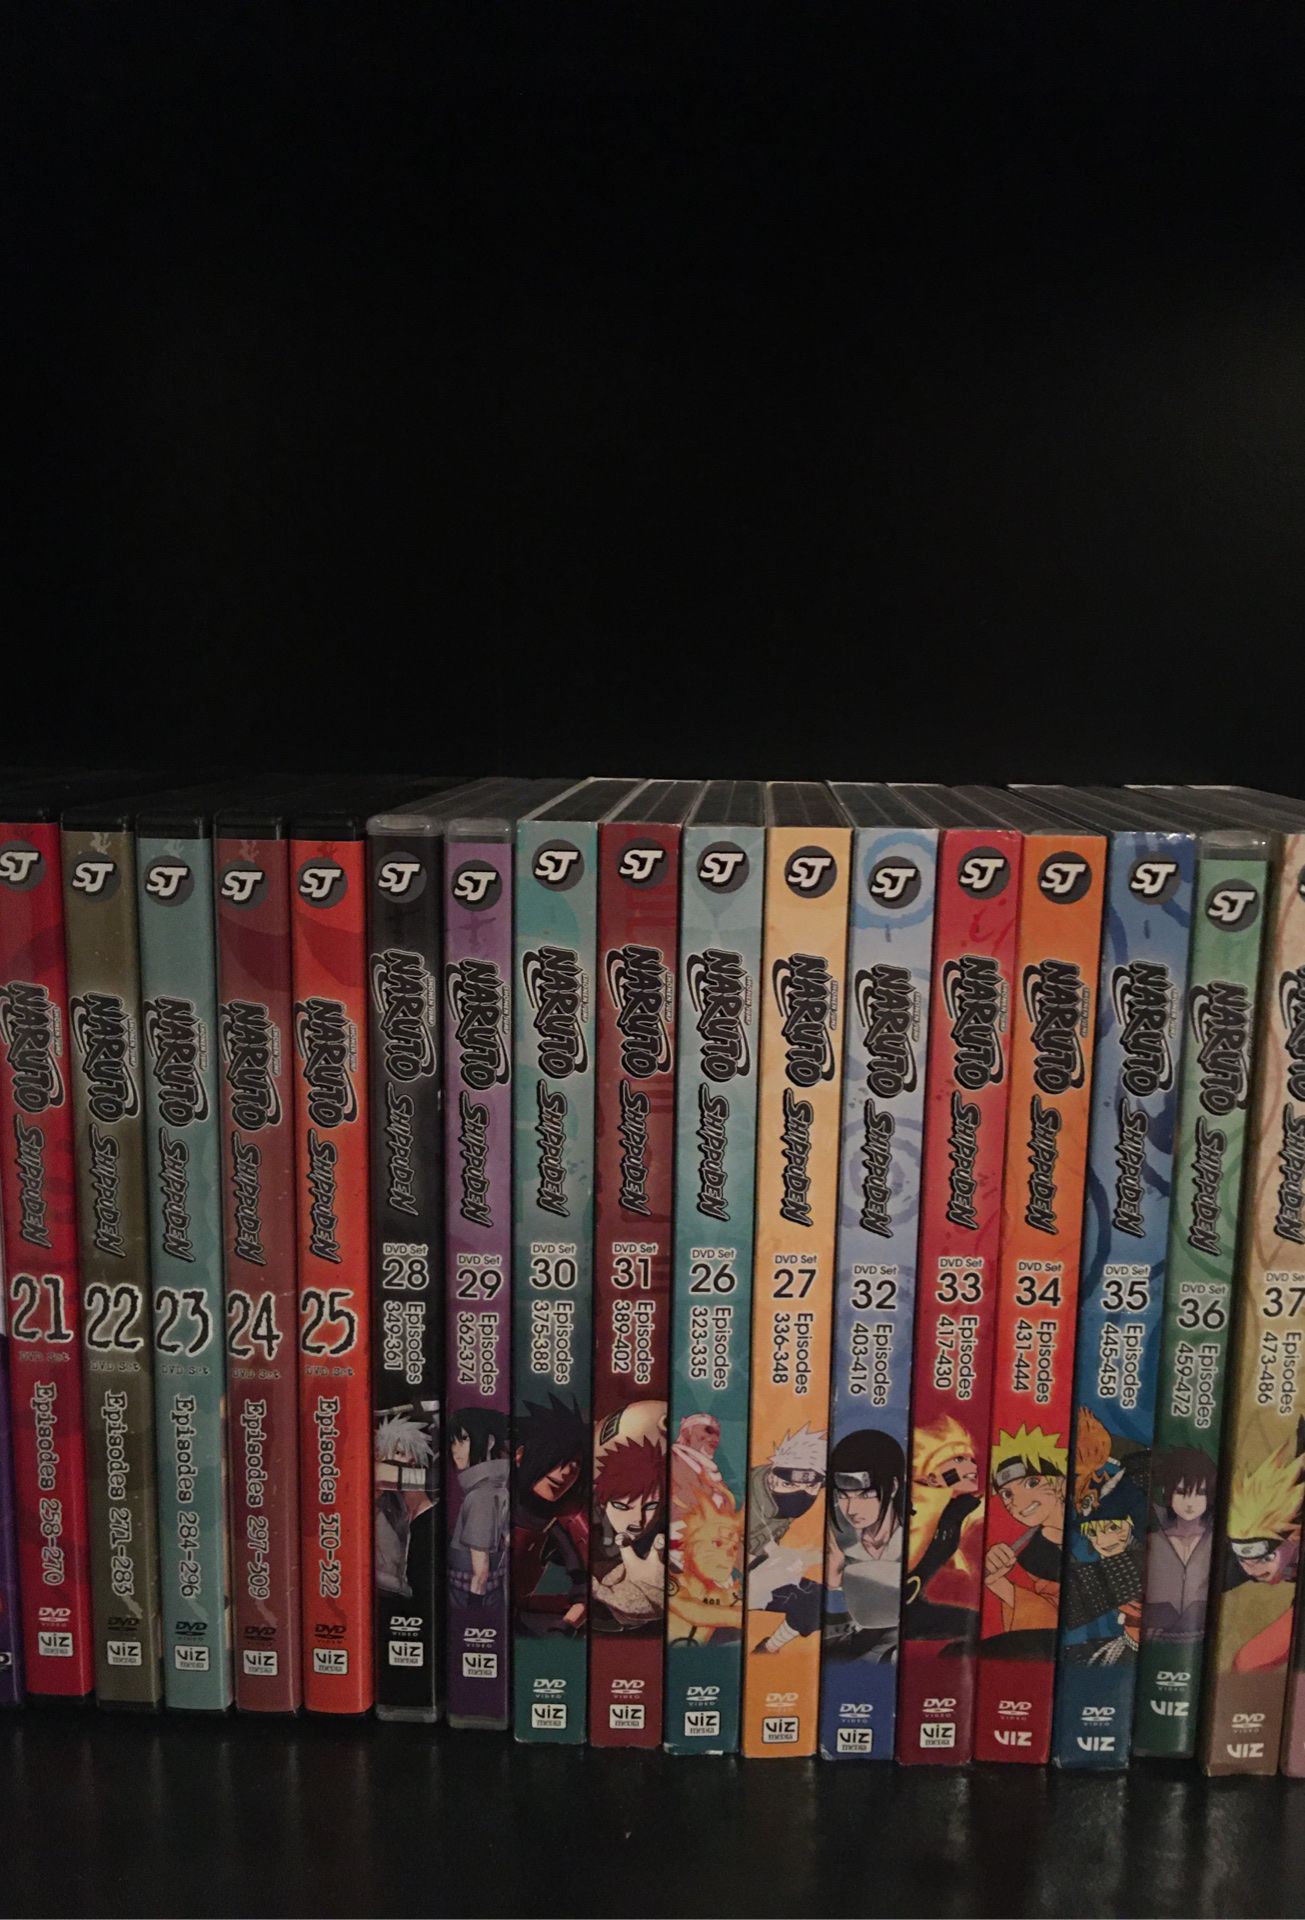 Naruto Shippuden dvd set 21-37